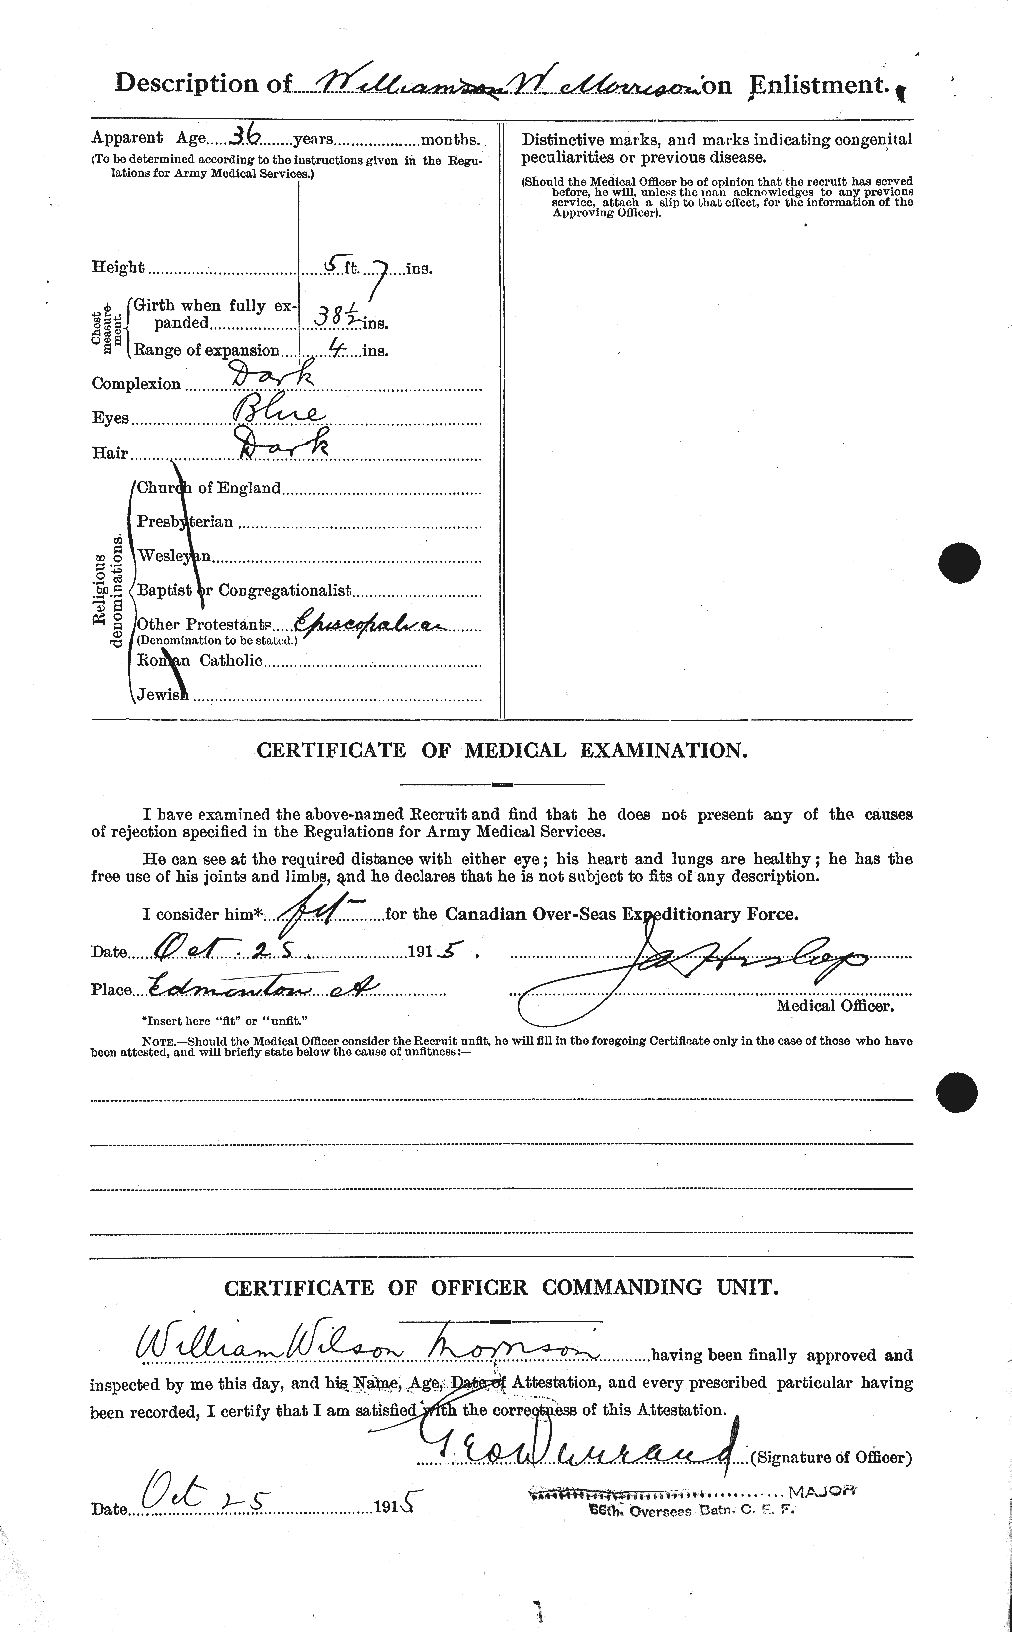 Dossiers du Personnel de la Première Guerre mondiale - CEC 509331b